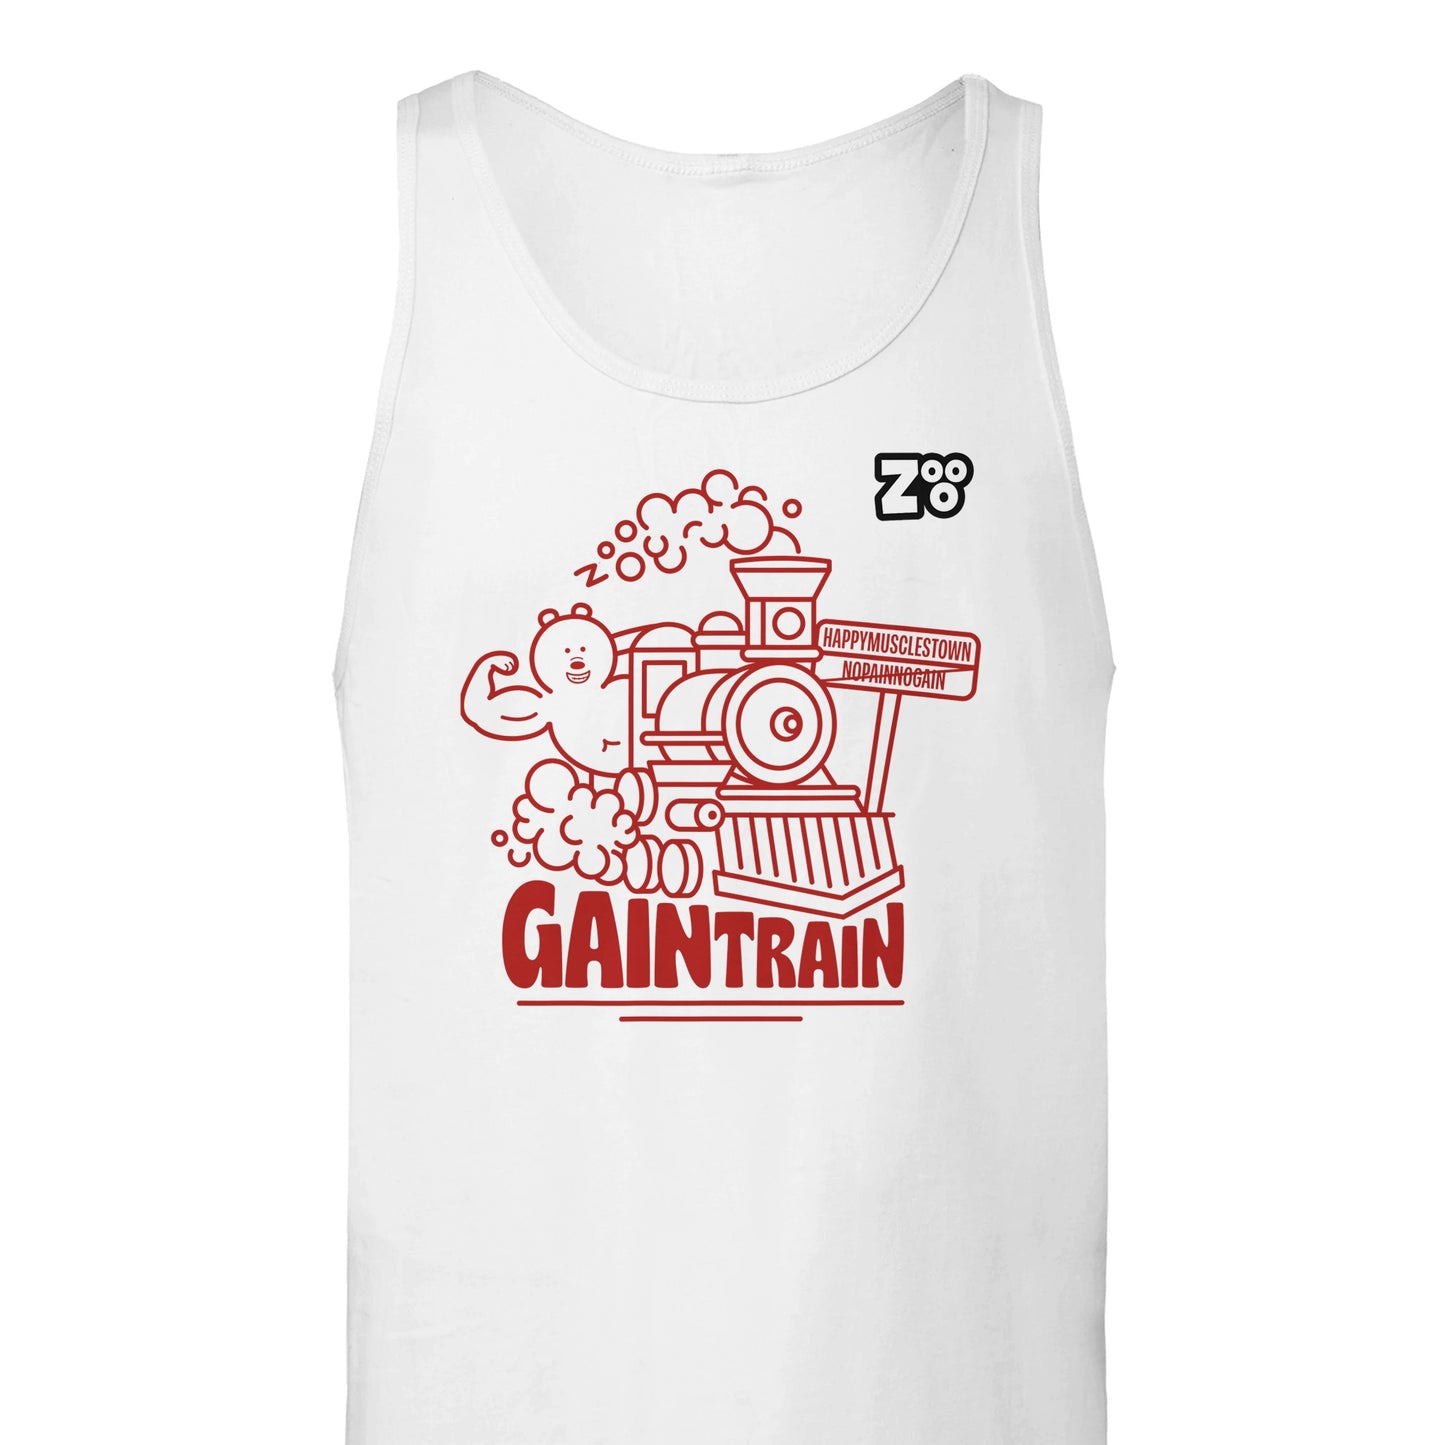 Gain Train Tank Top te koop op Zooo.store, met een stoer en sportief ontwerp, ideaal voor workouts, verkrijgbaar in diverse kleuren en maten.